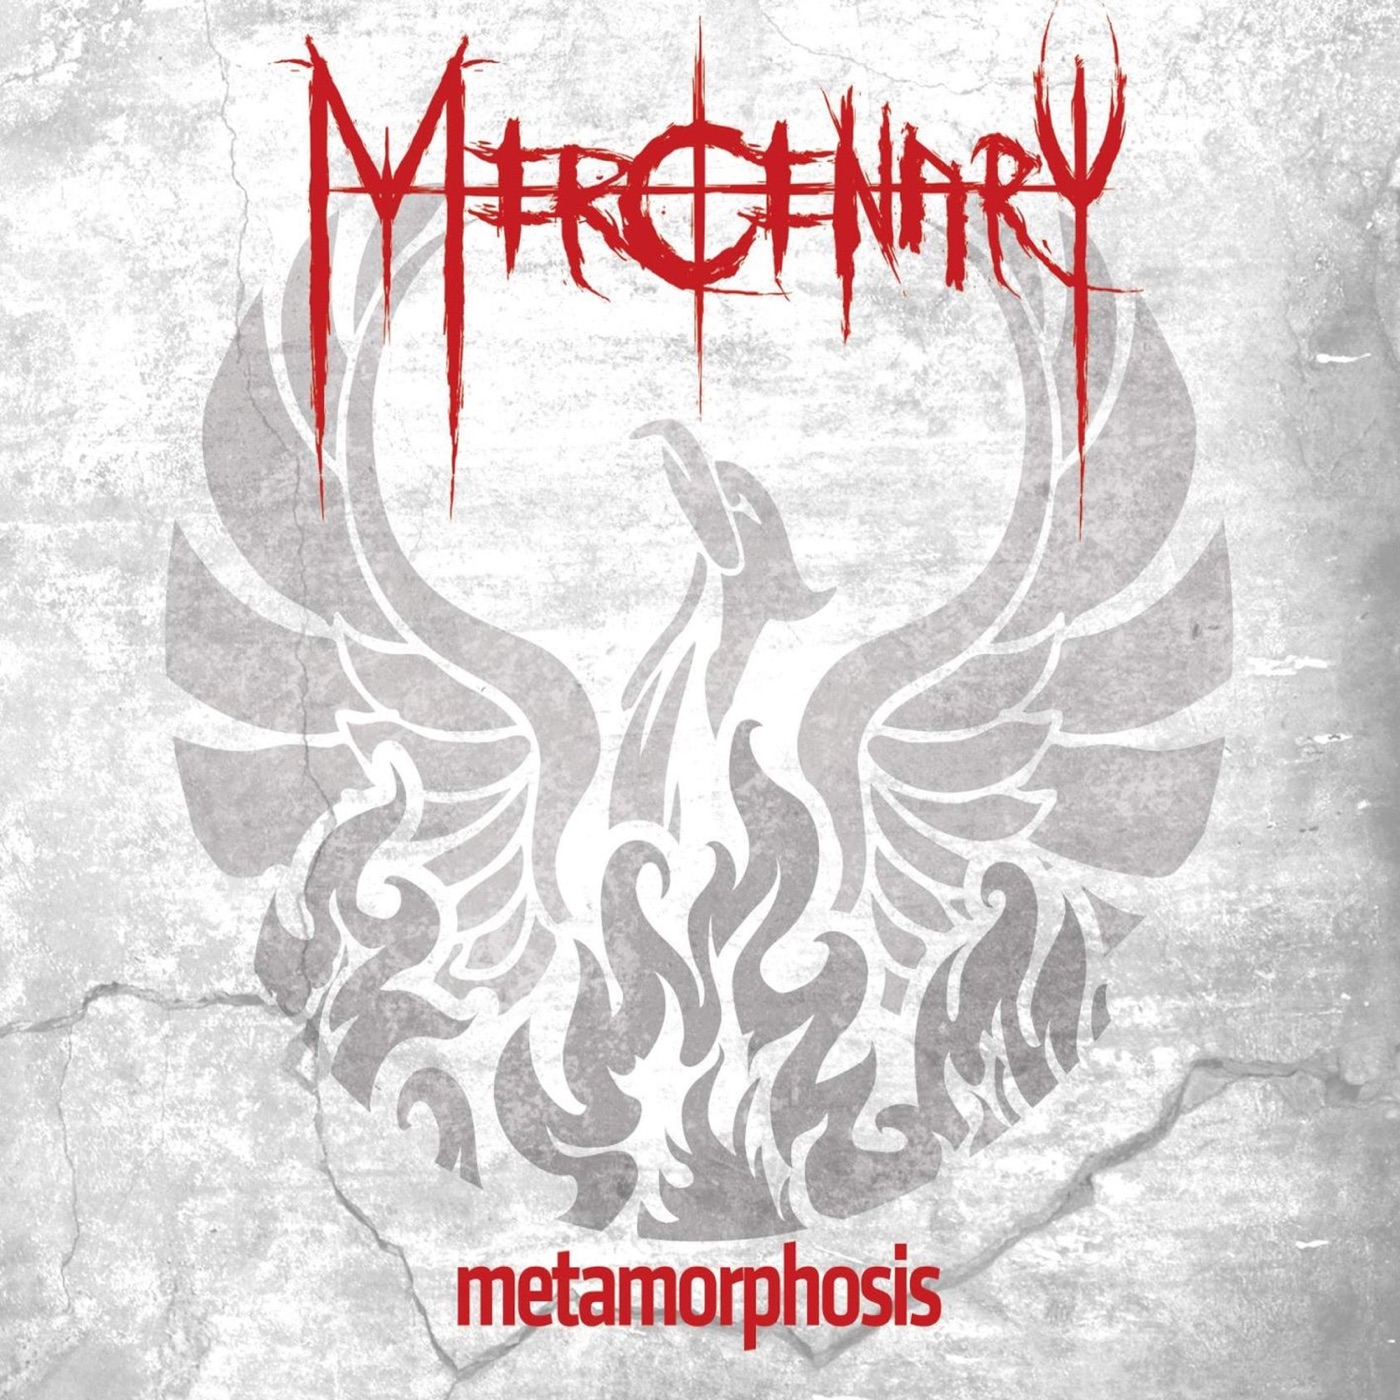 Metamorphosis by Mercenary